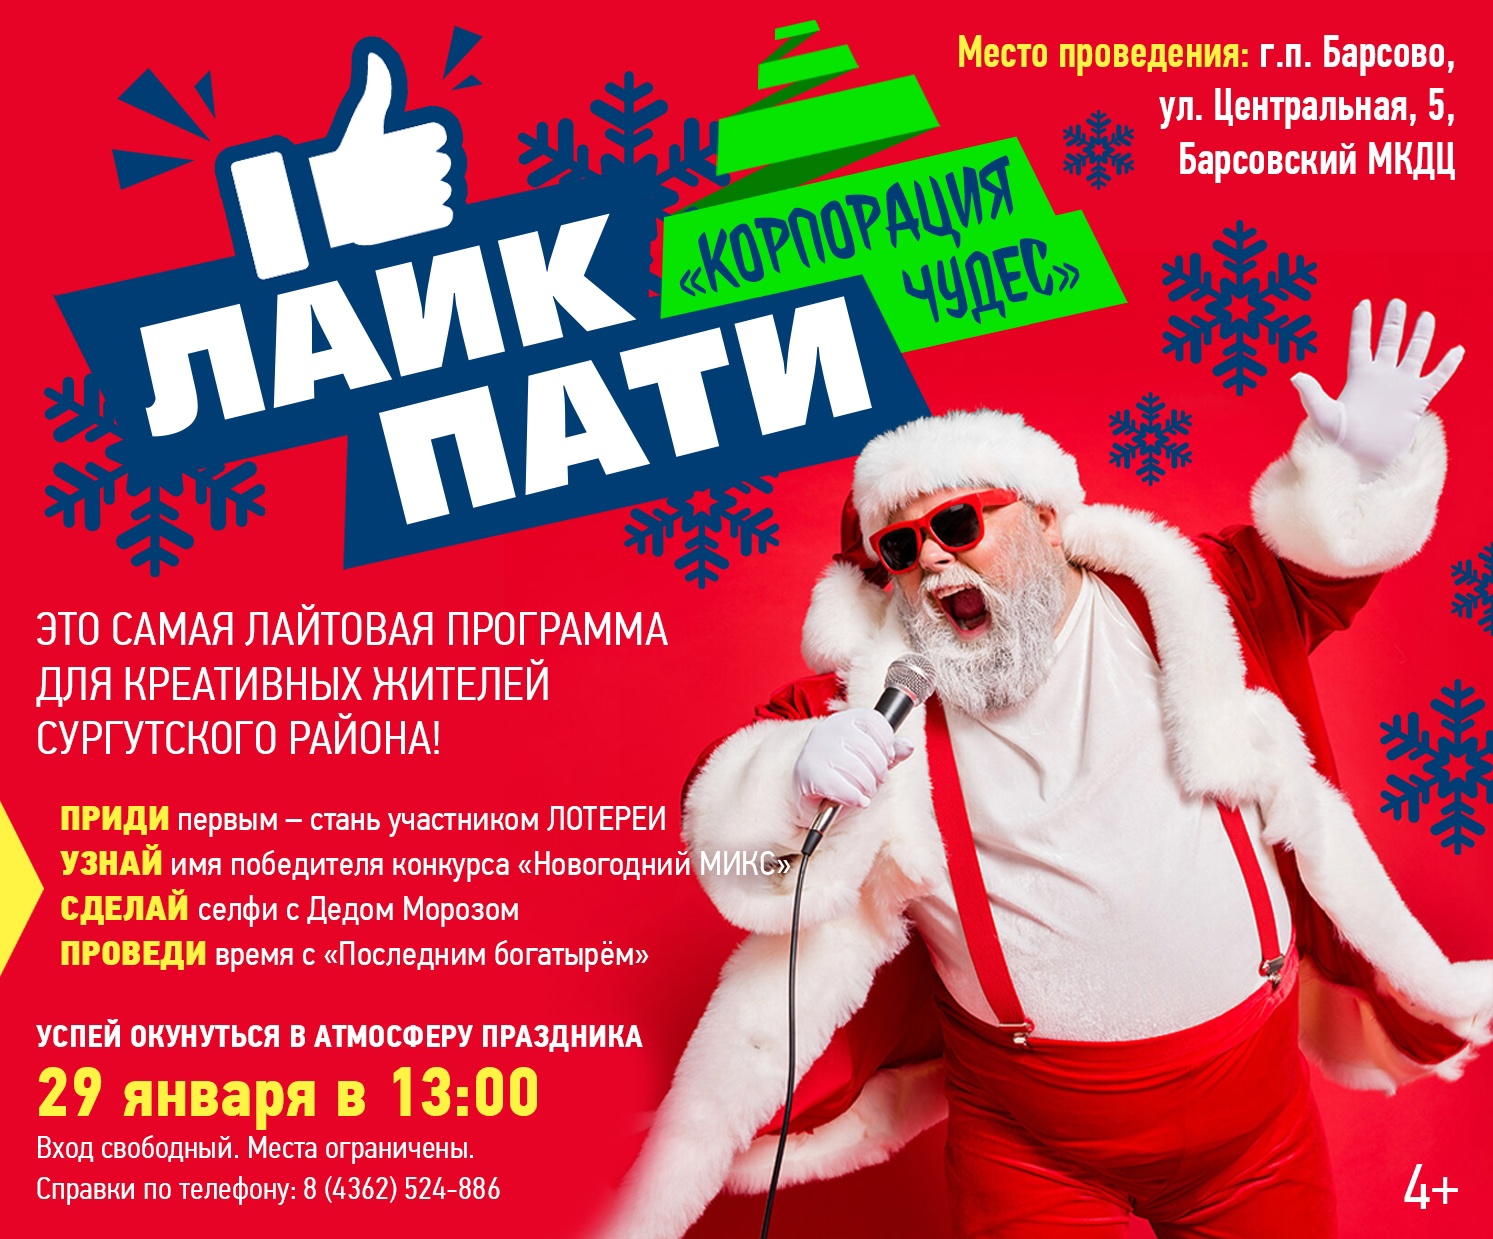 29 января в 13:00! Событие для креативных жителей Сургутского района!